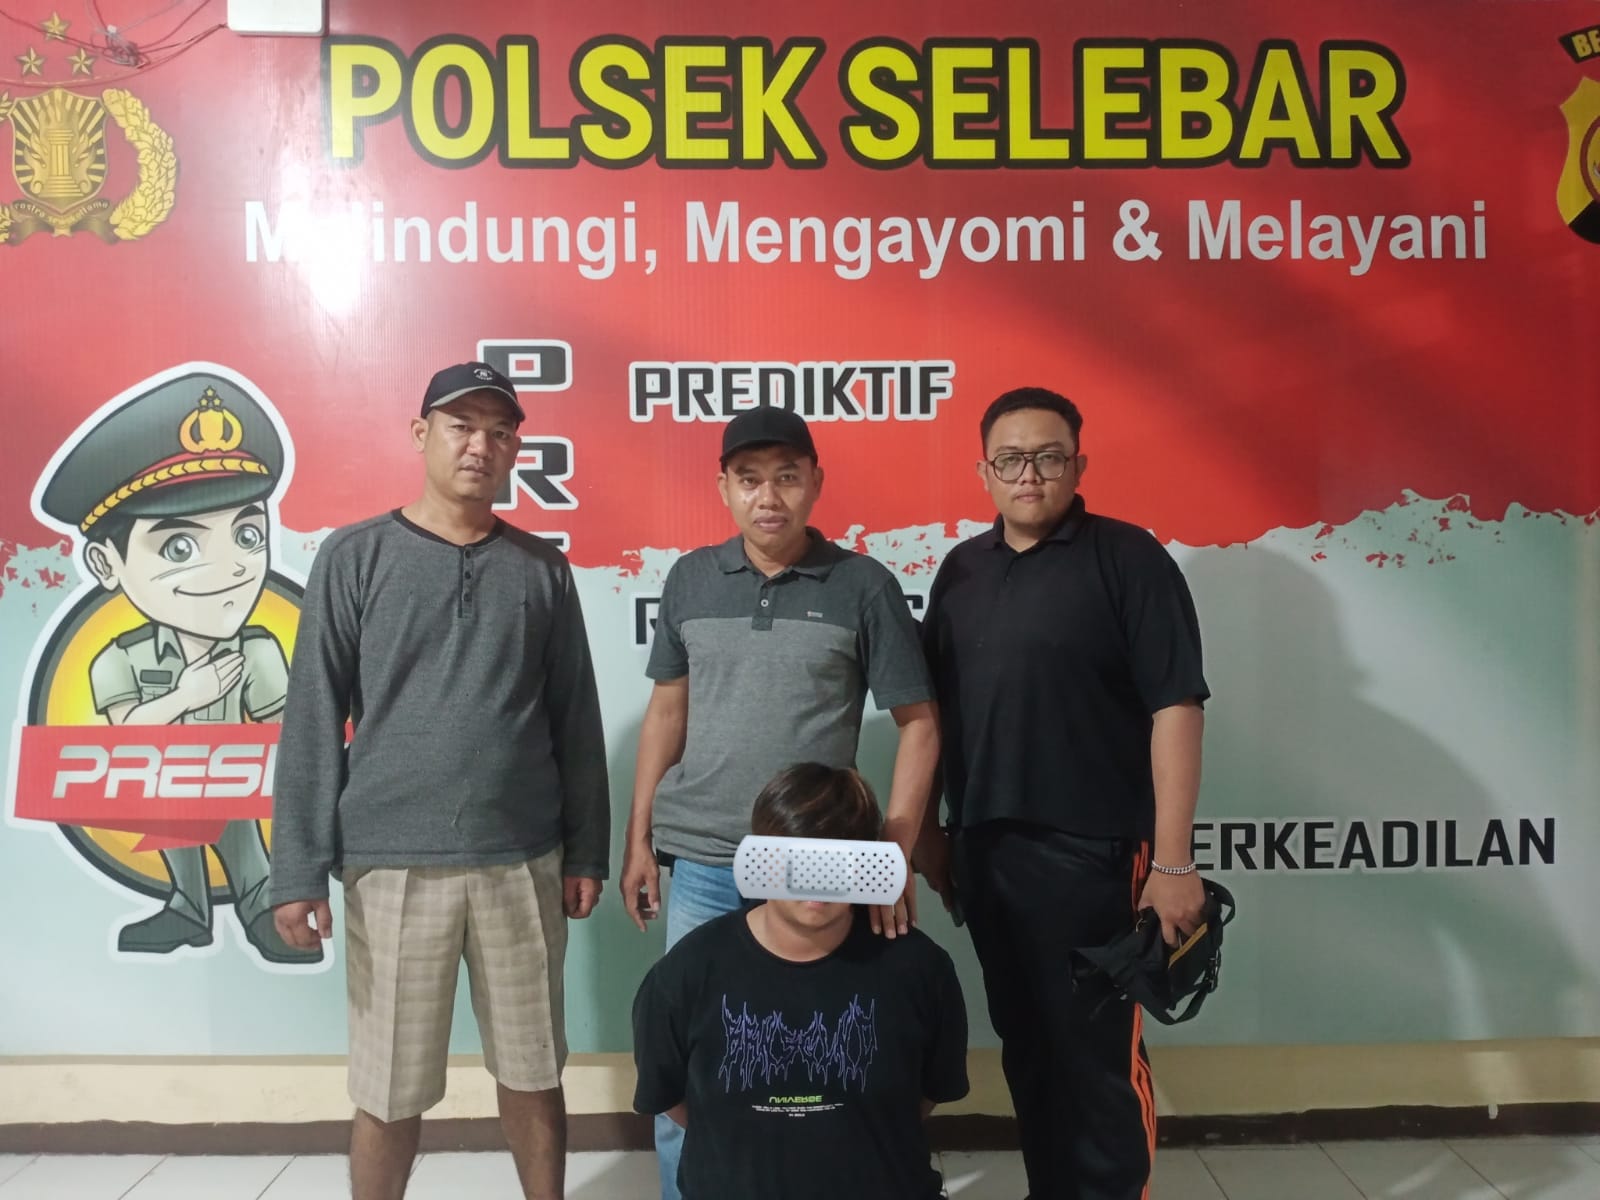 Driver Ojol di Kota Bengkulu Ditangkap, Gelapkan Motor Teman Sendiri